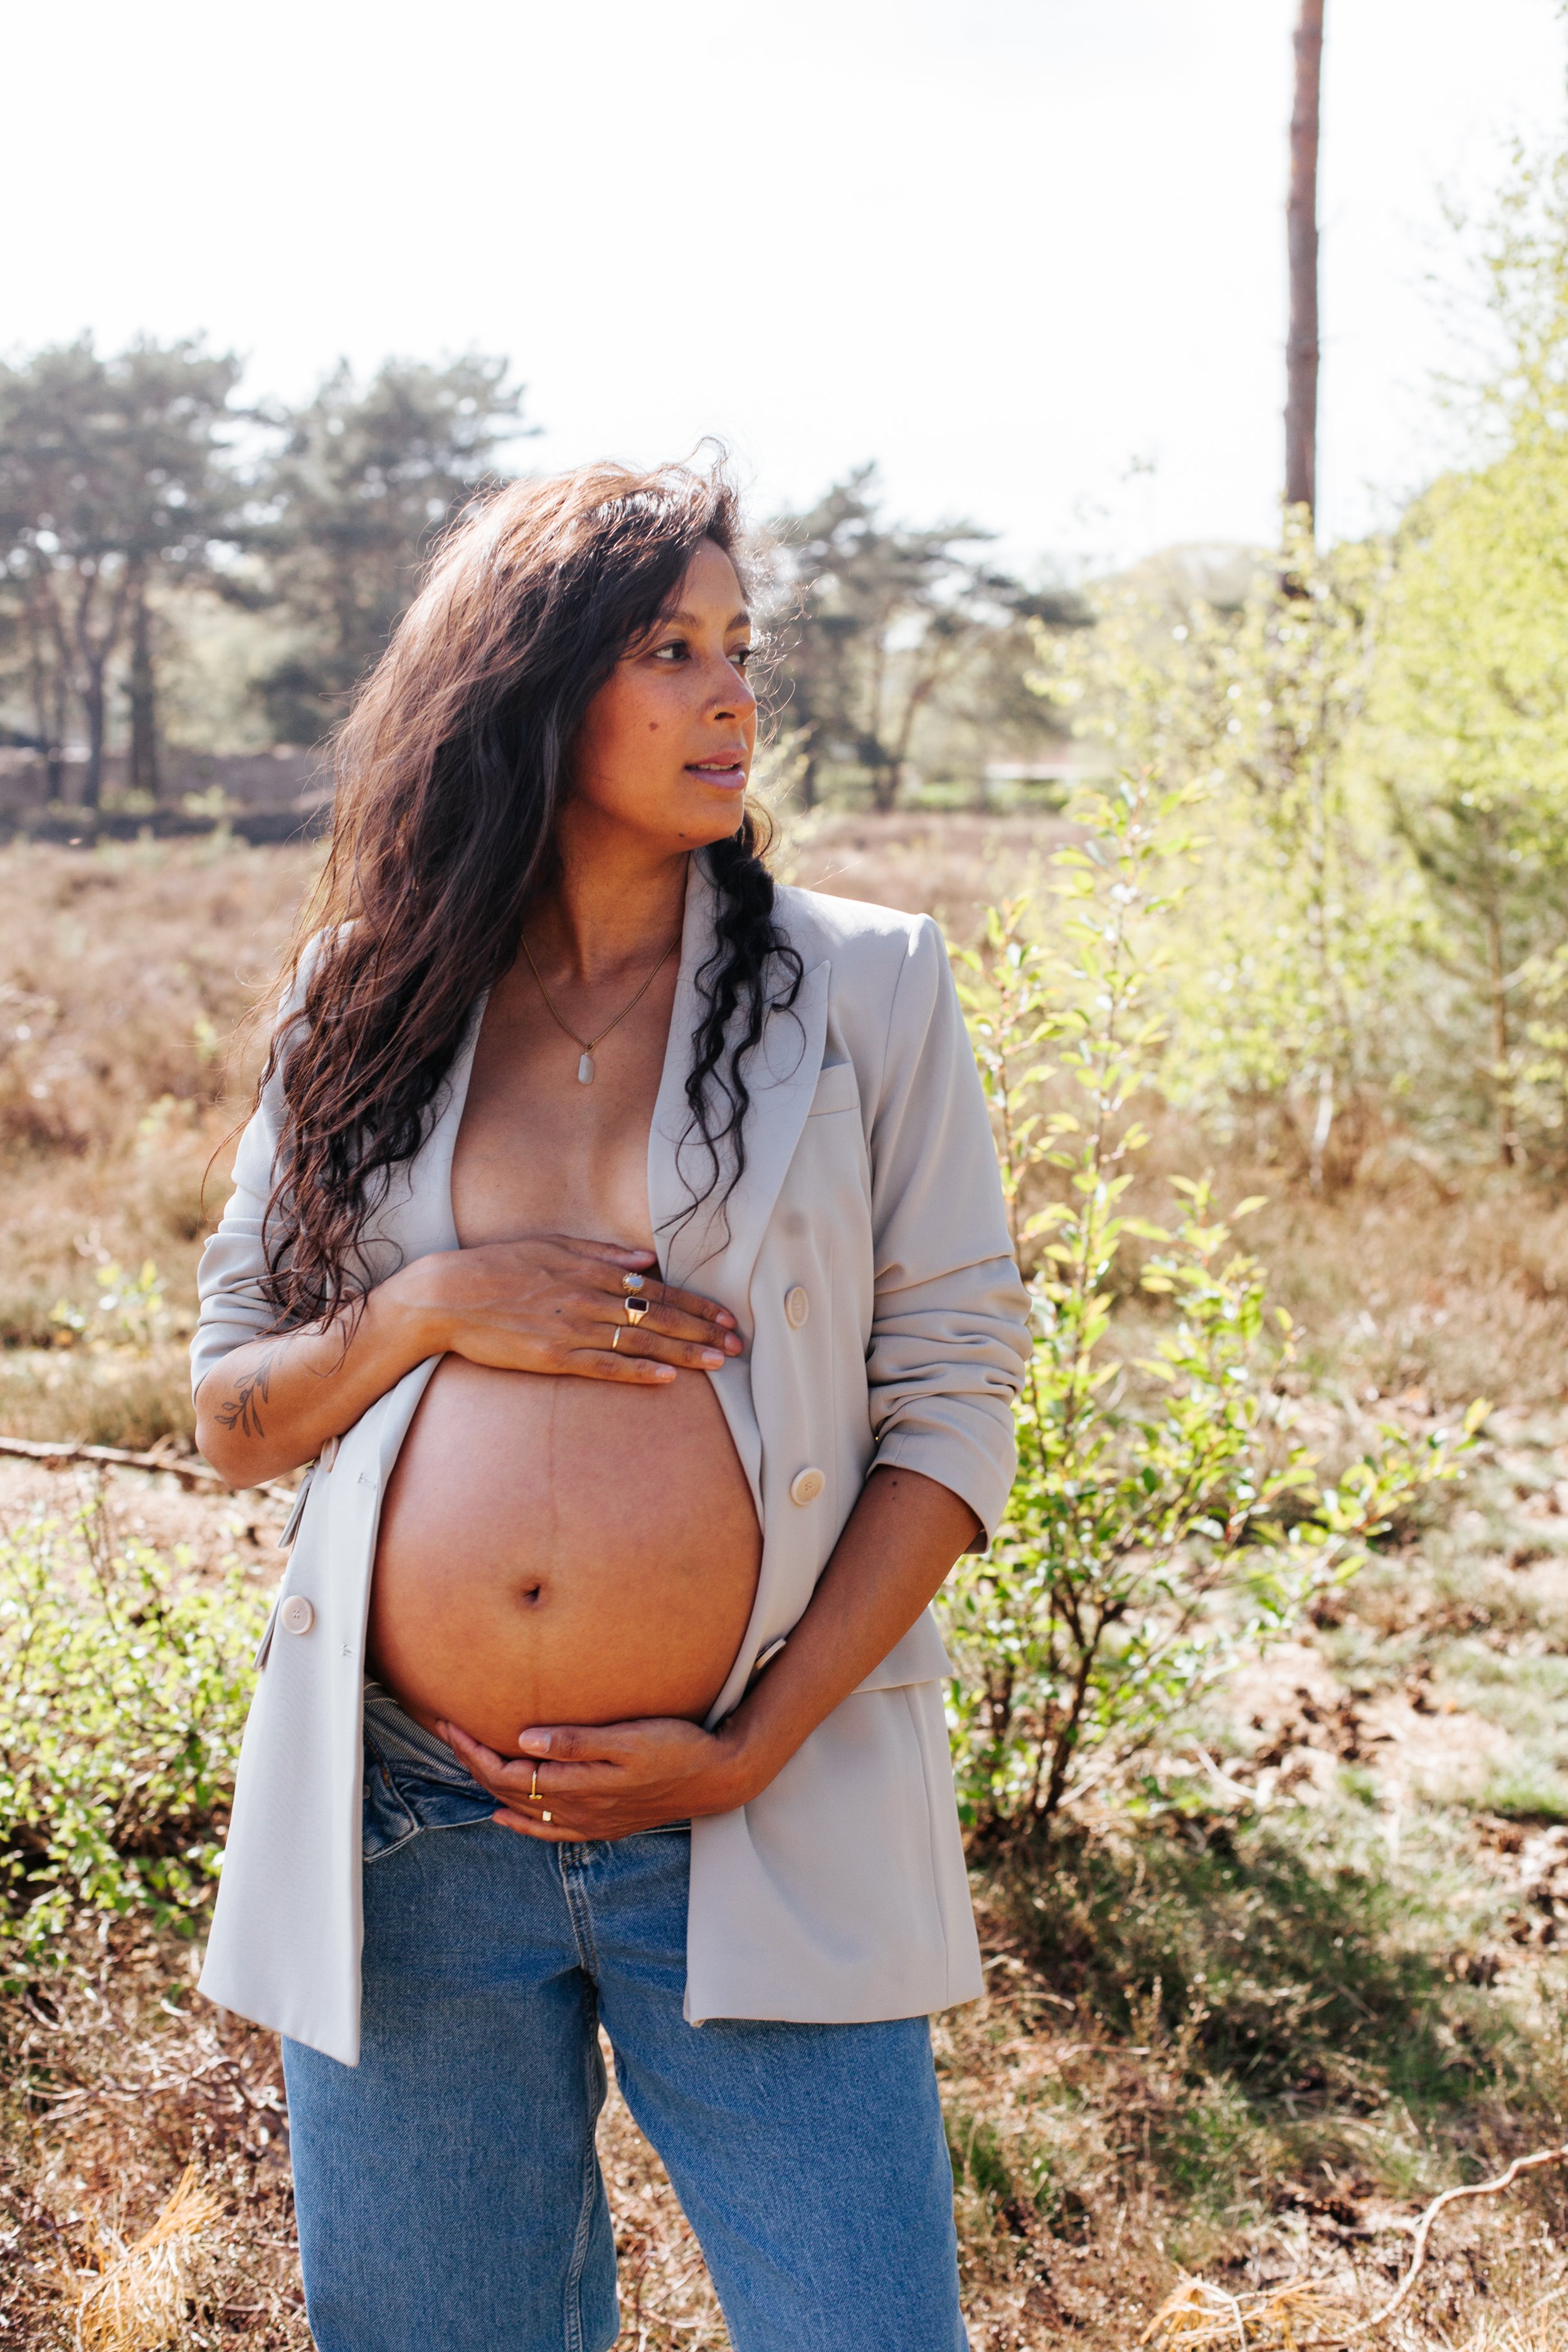 Vanaf daar Zoek machine optimalisatie Korea Larissa over zwanger worden, preggo life en haar verwachtingen van het  moederschap… — NANA studio